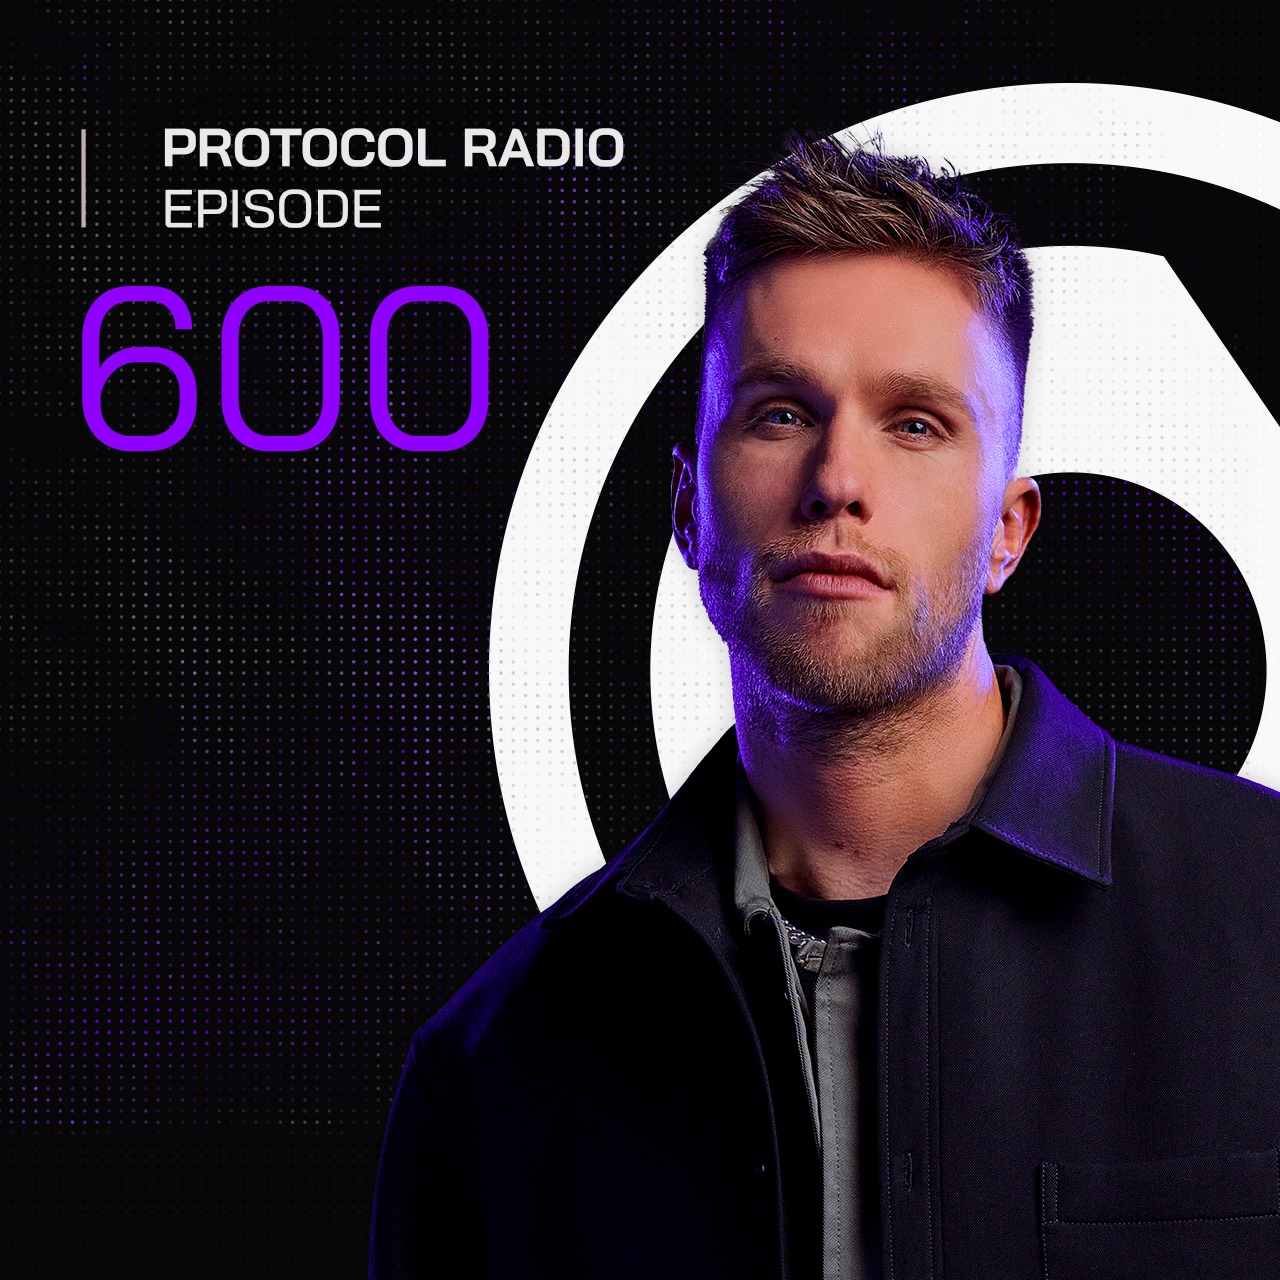 Protocol Radio #600